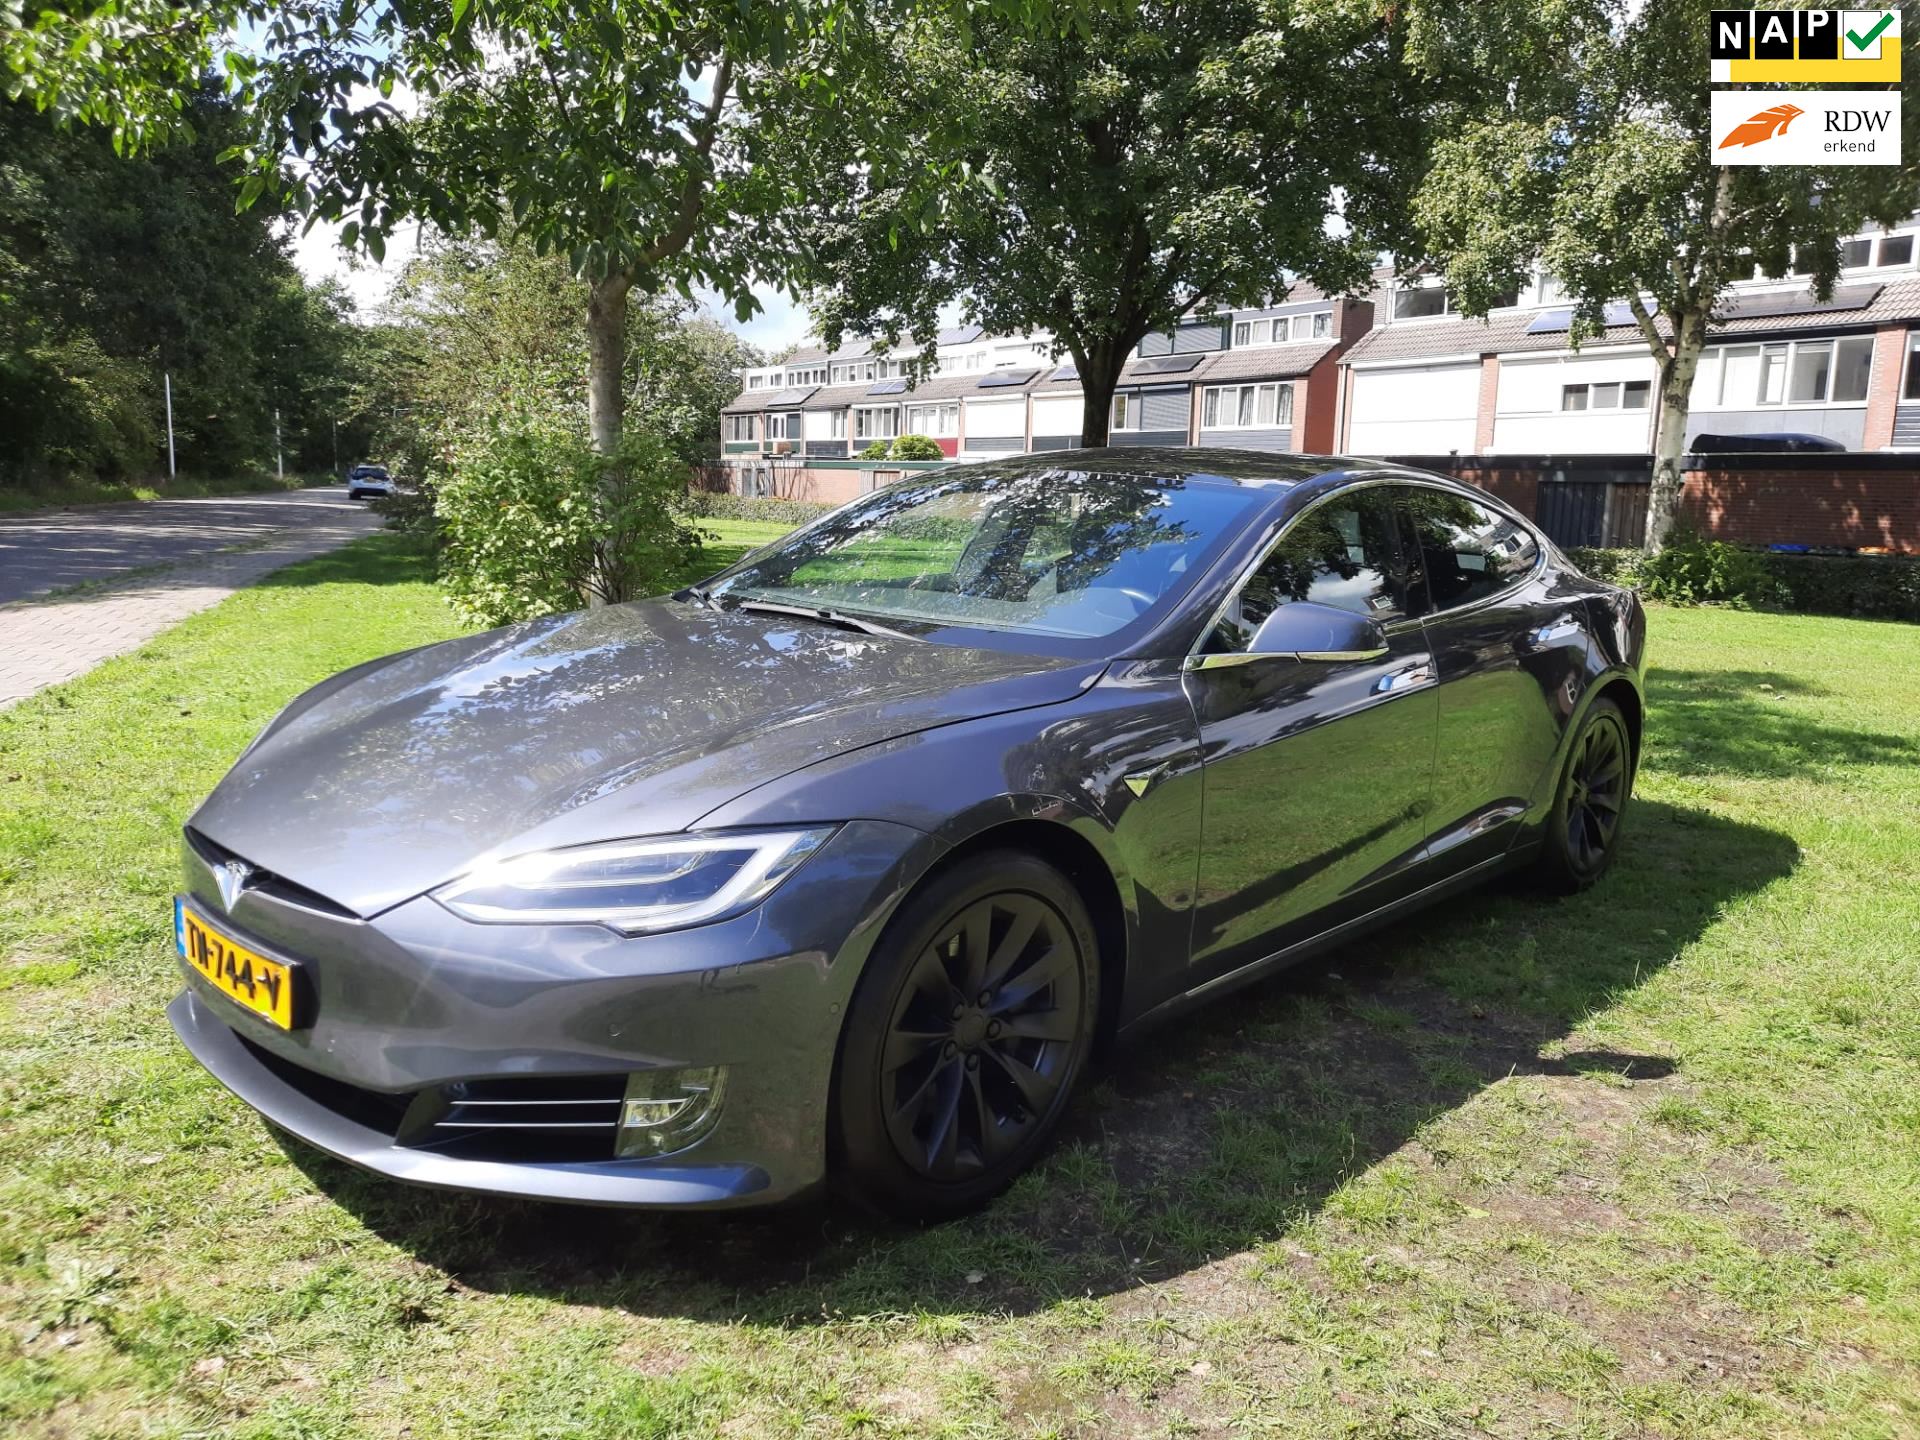 Tesla Model S occasion - autoplaceede